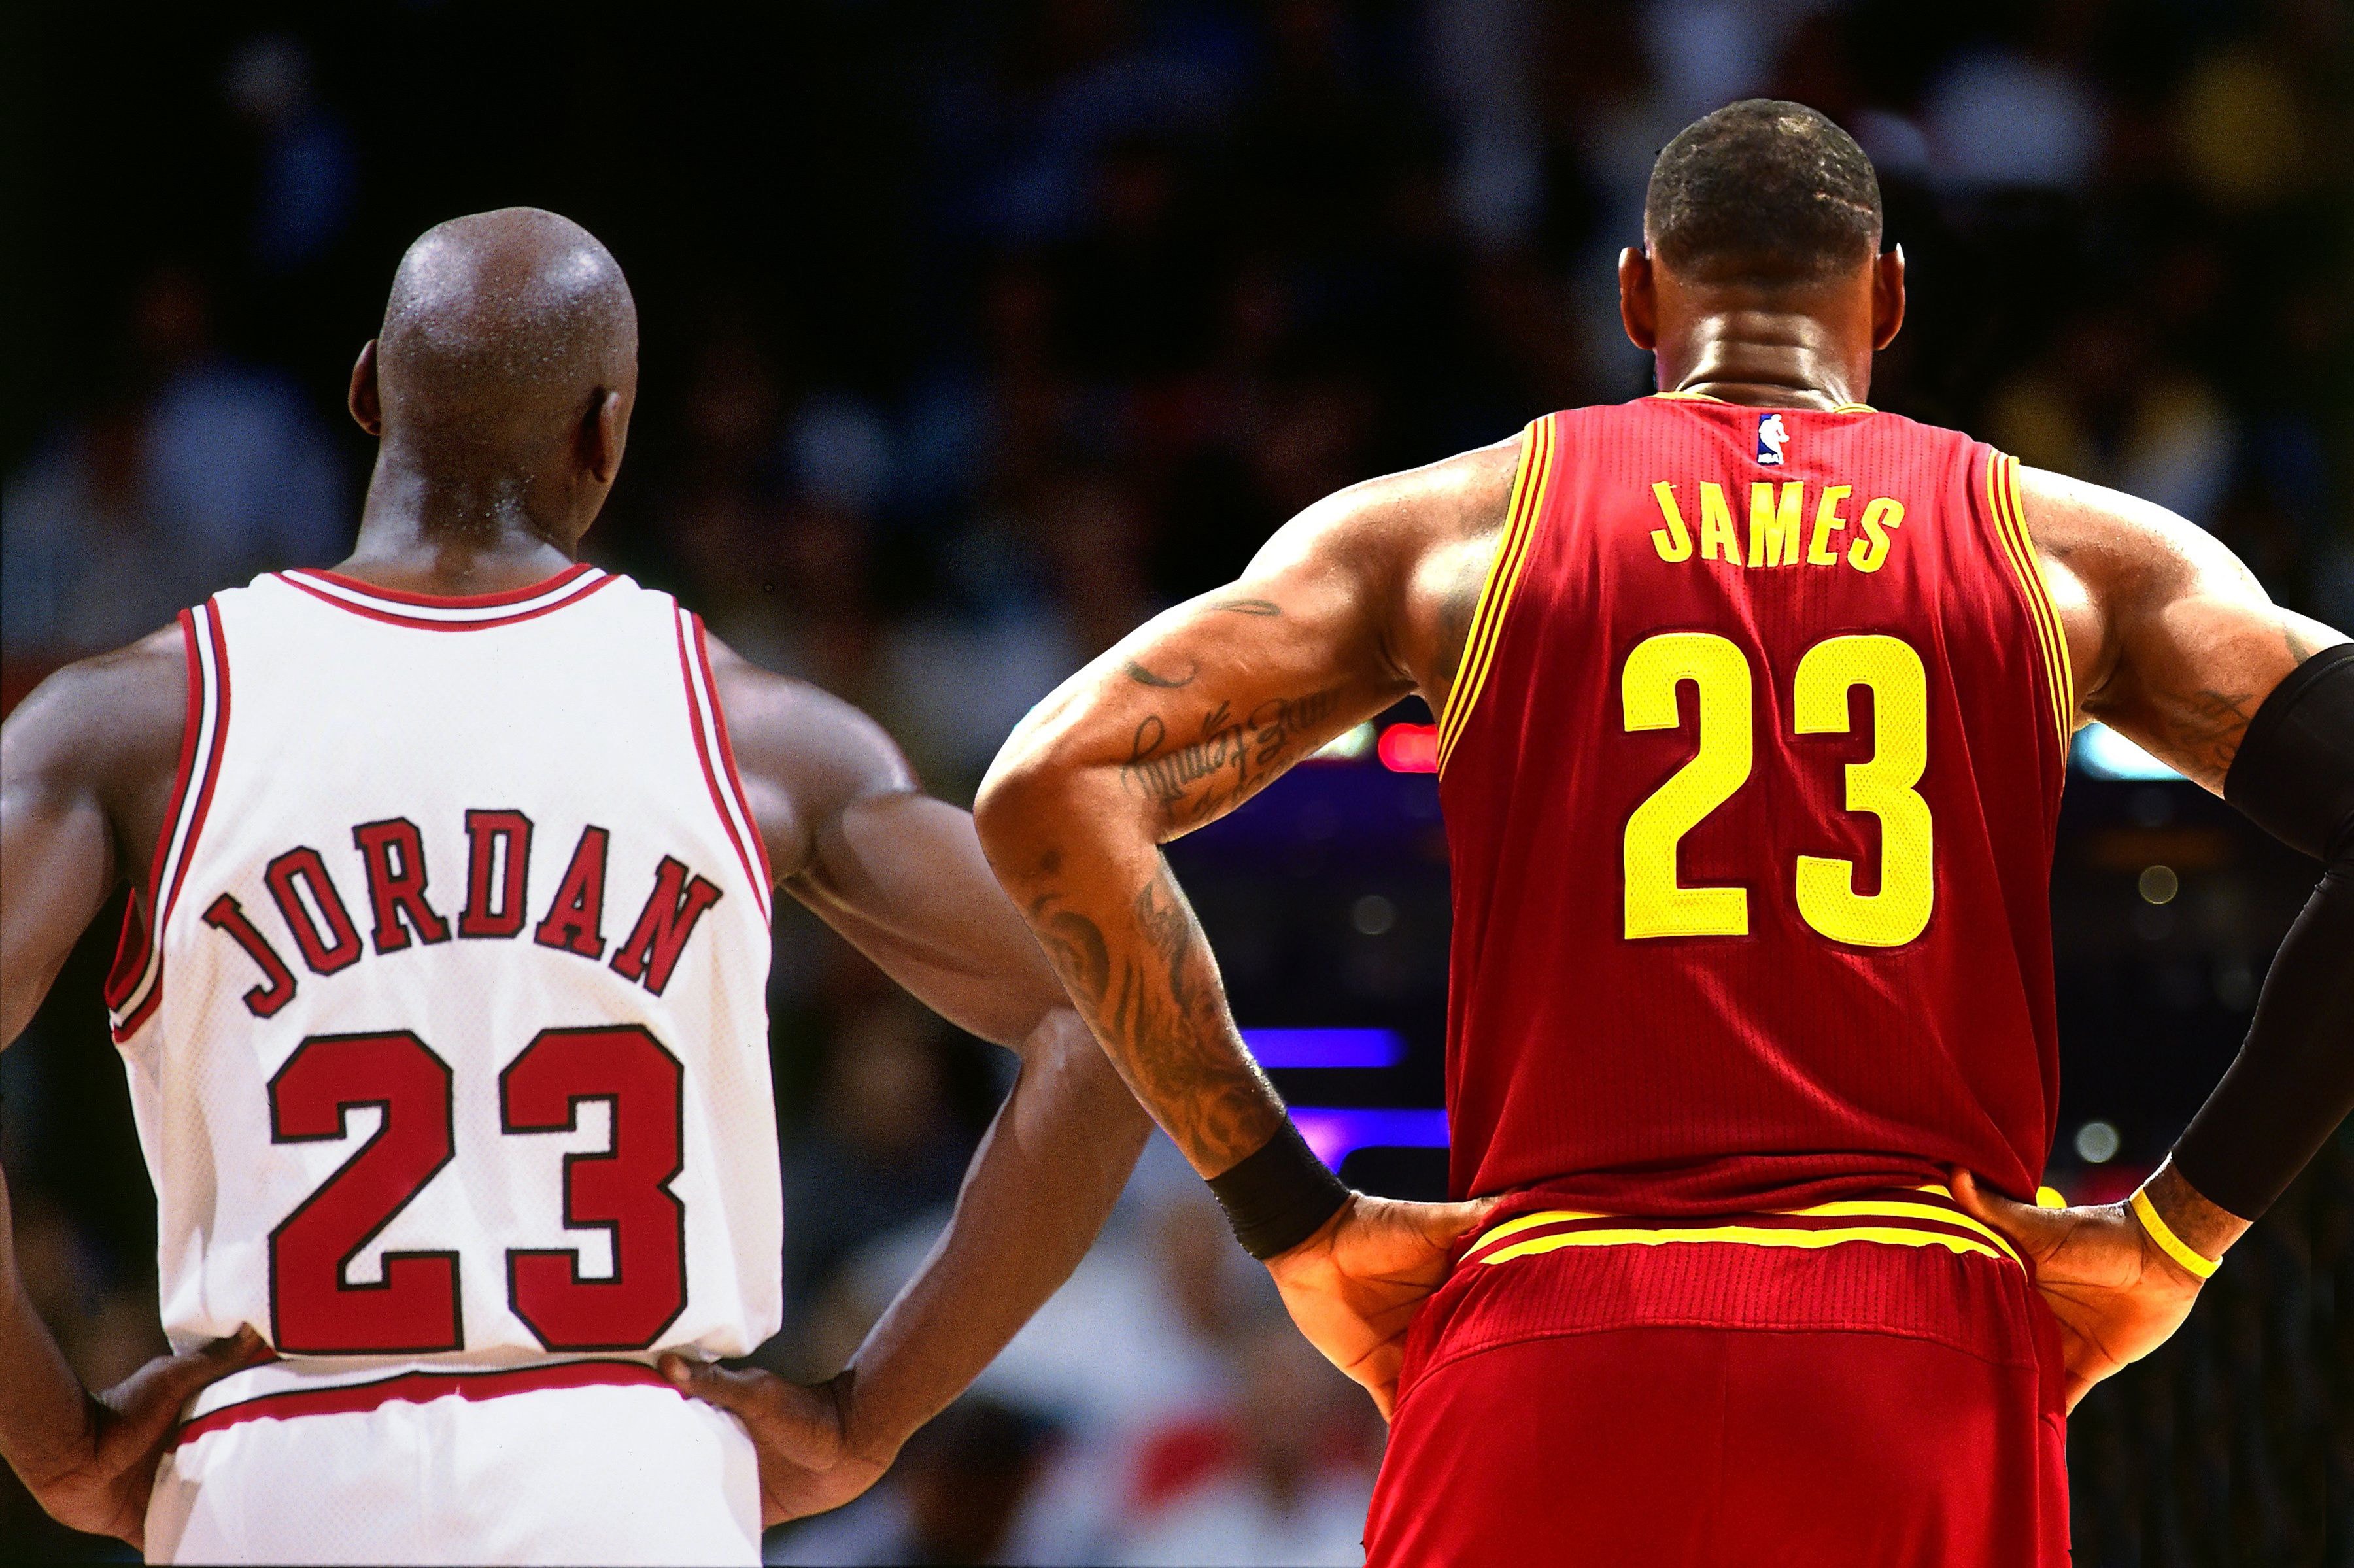 統計顯示 LeBron James 已經超越 Michael Jordan 的 NBA 出場時間